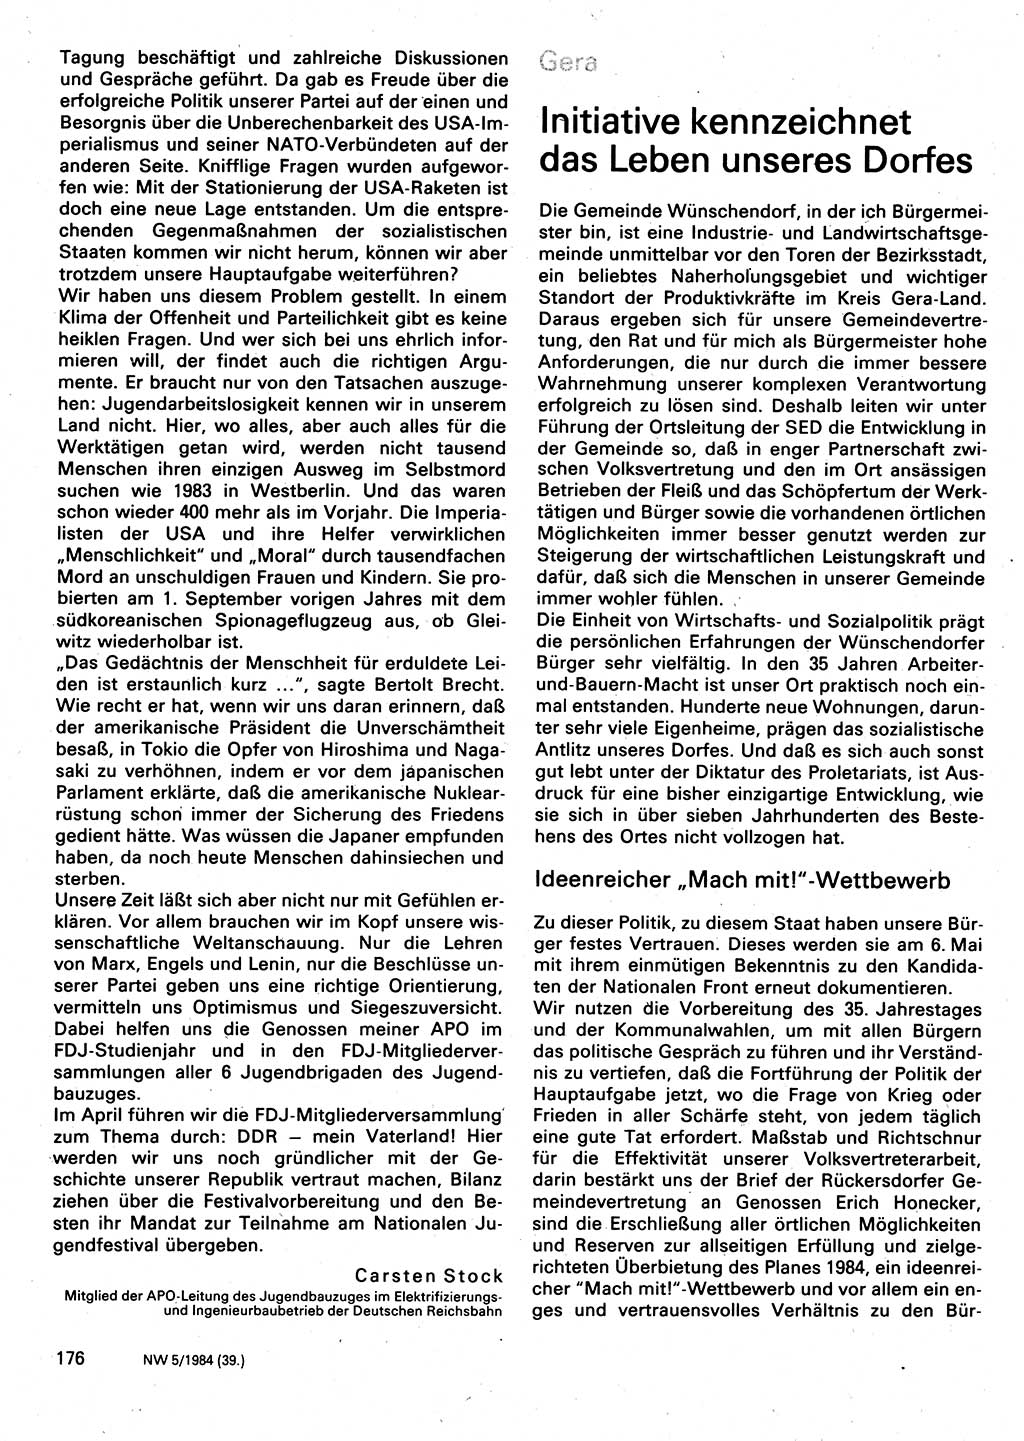 Neuer Weg (NW), Organ des Zentralkomitees (ZK) der SED (Sozialistische Einheitspartei Deutschlands) für Fragen des Parteilebens, 39. Jahrgang [Deutsche Demokratische Republik (DDR)] 1984, Seite 176 (NW ZK SED DDR 1984, S. 176)